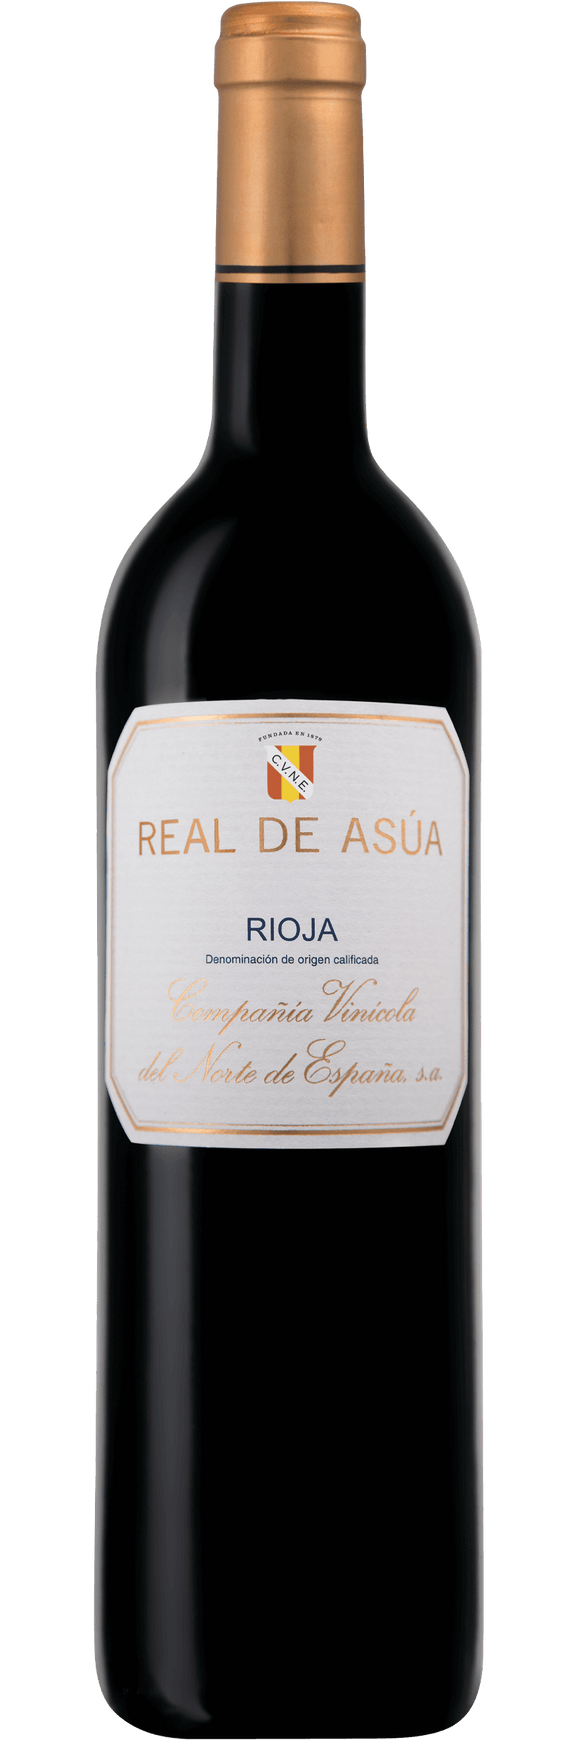 Real de Asua Rioja 2018